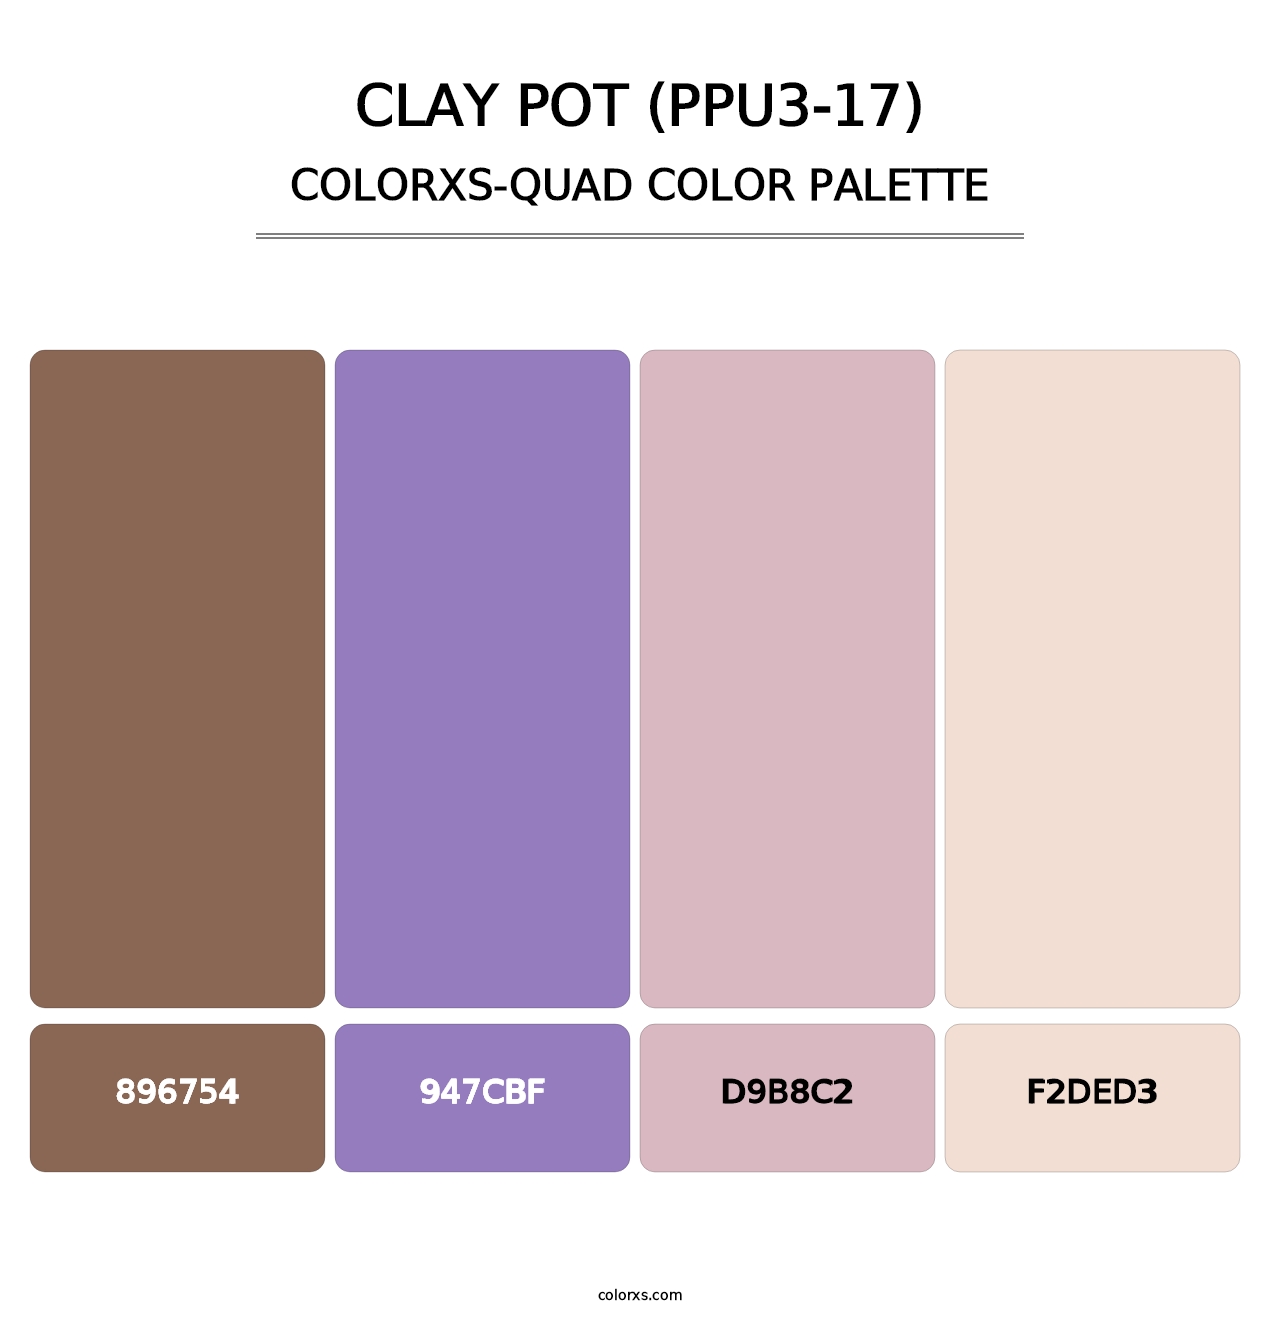 Clay Pot (PPU3-17) - Colorxs Quad Palette